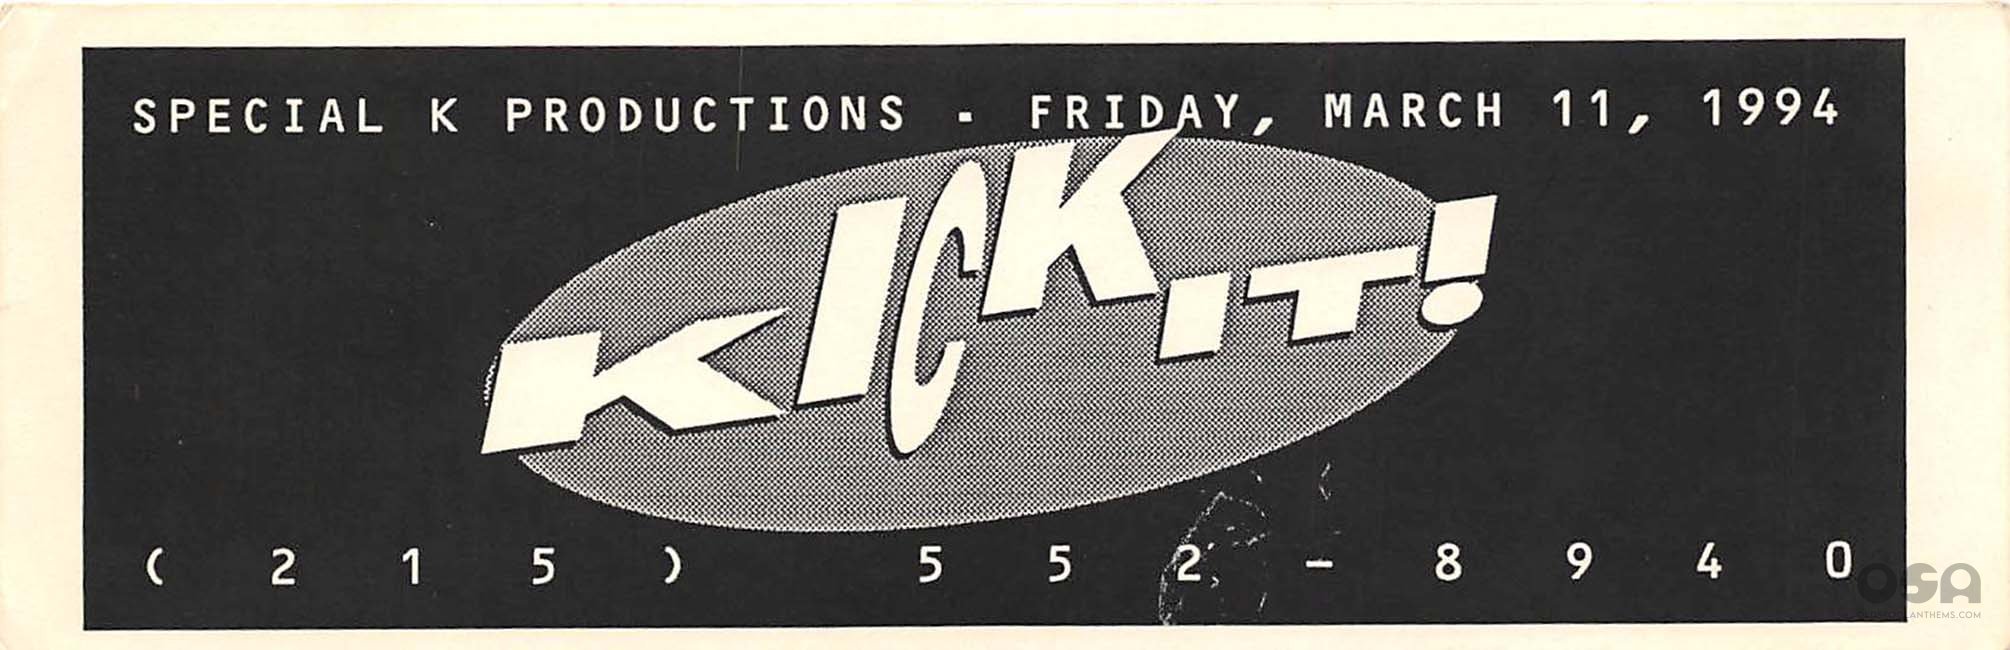 Kick It March 11th, 1994